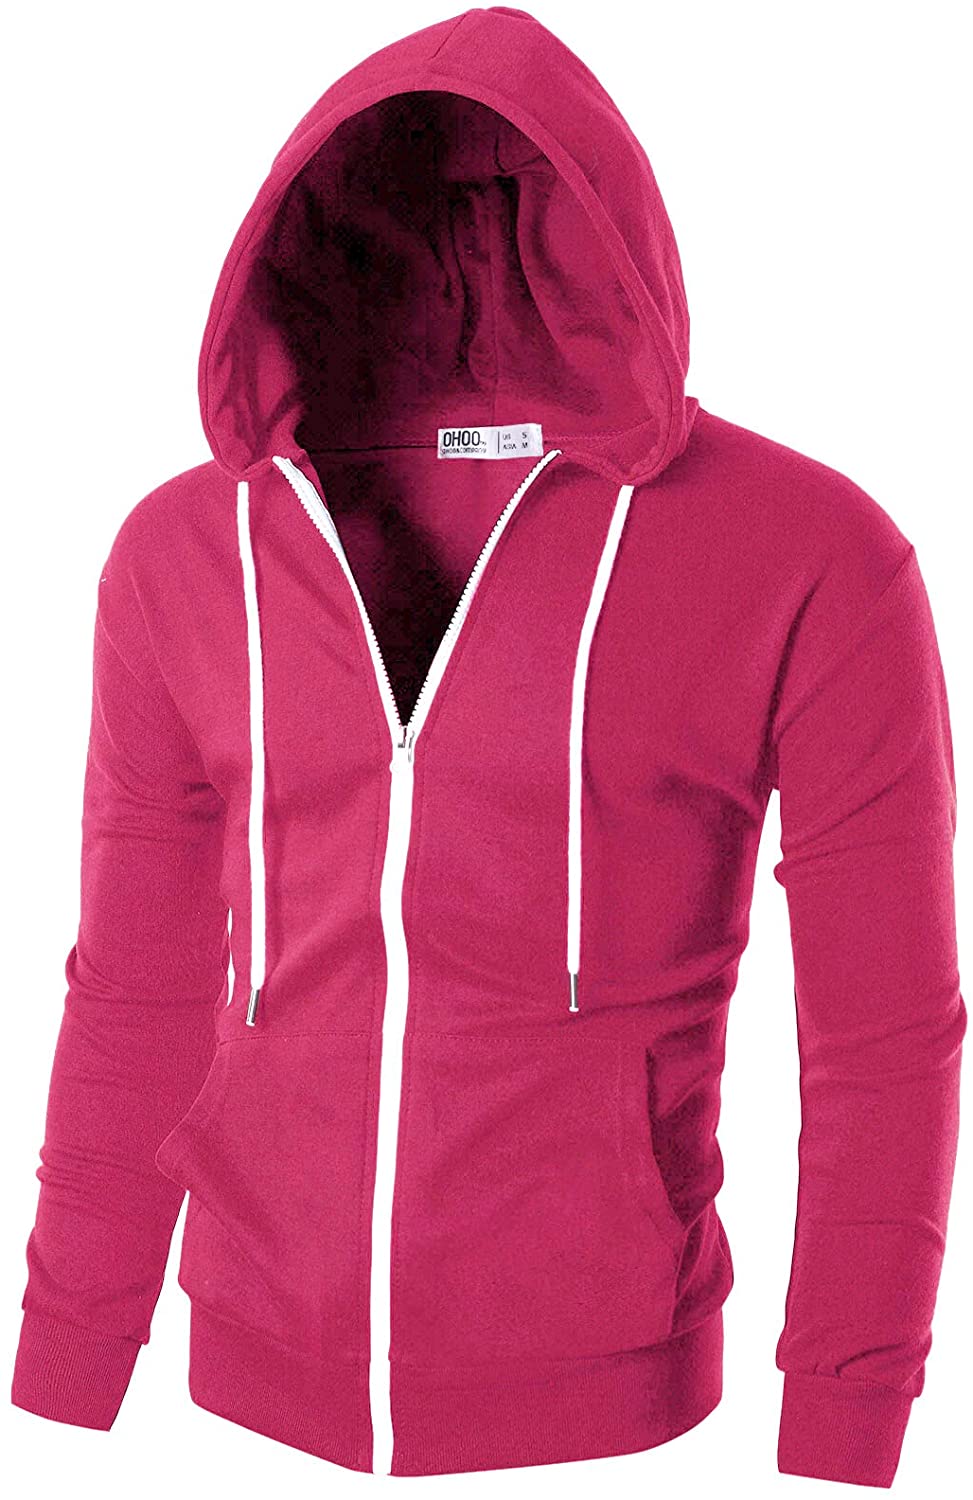 Ohoo Men's Slim Fit Water-Resistant Zip Up Hoodie Sweatshirt